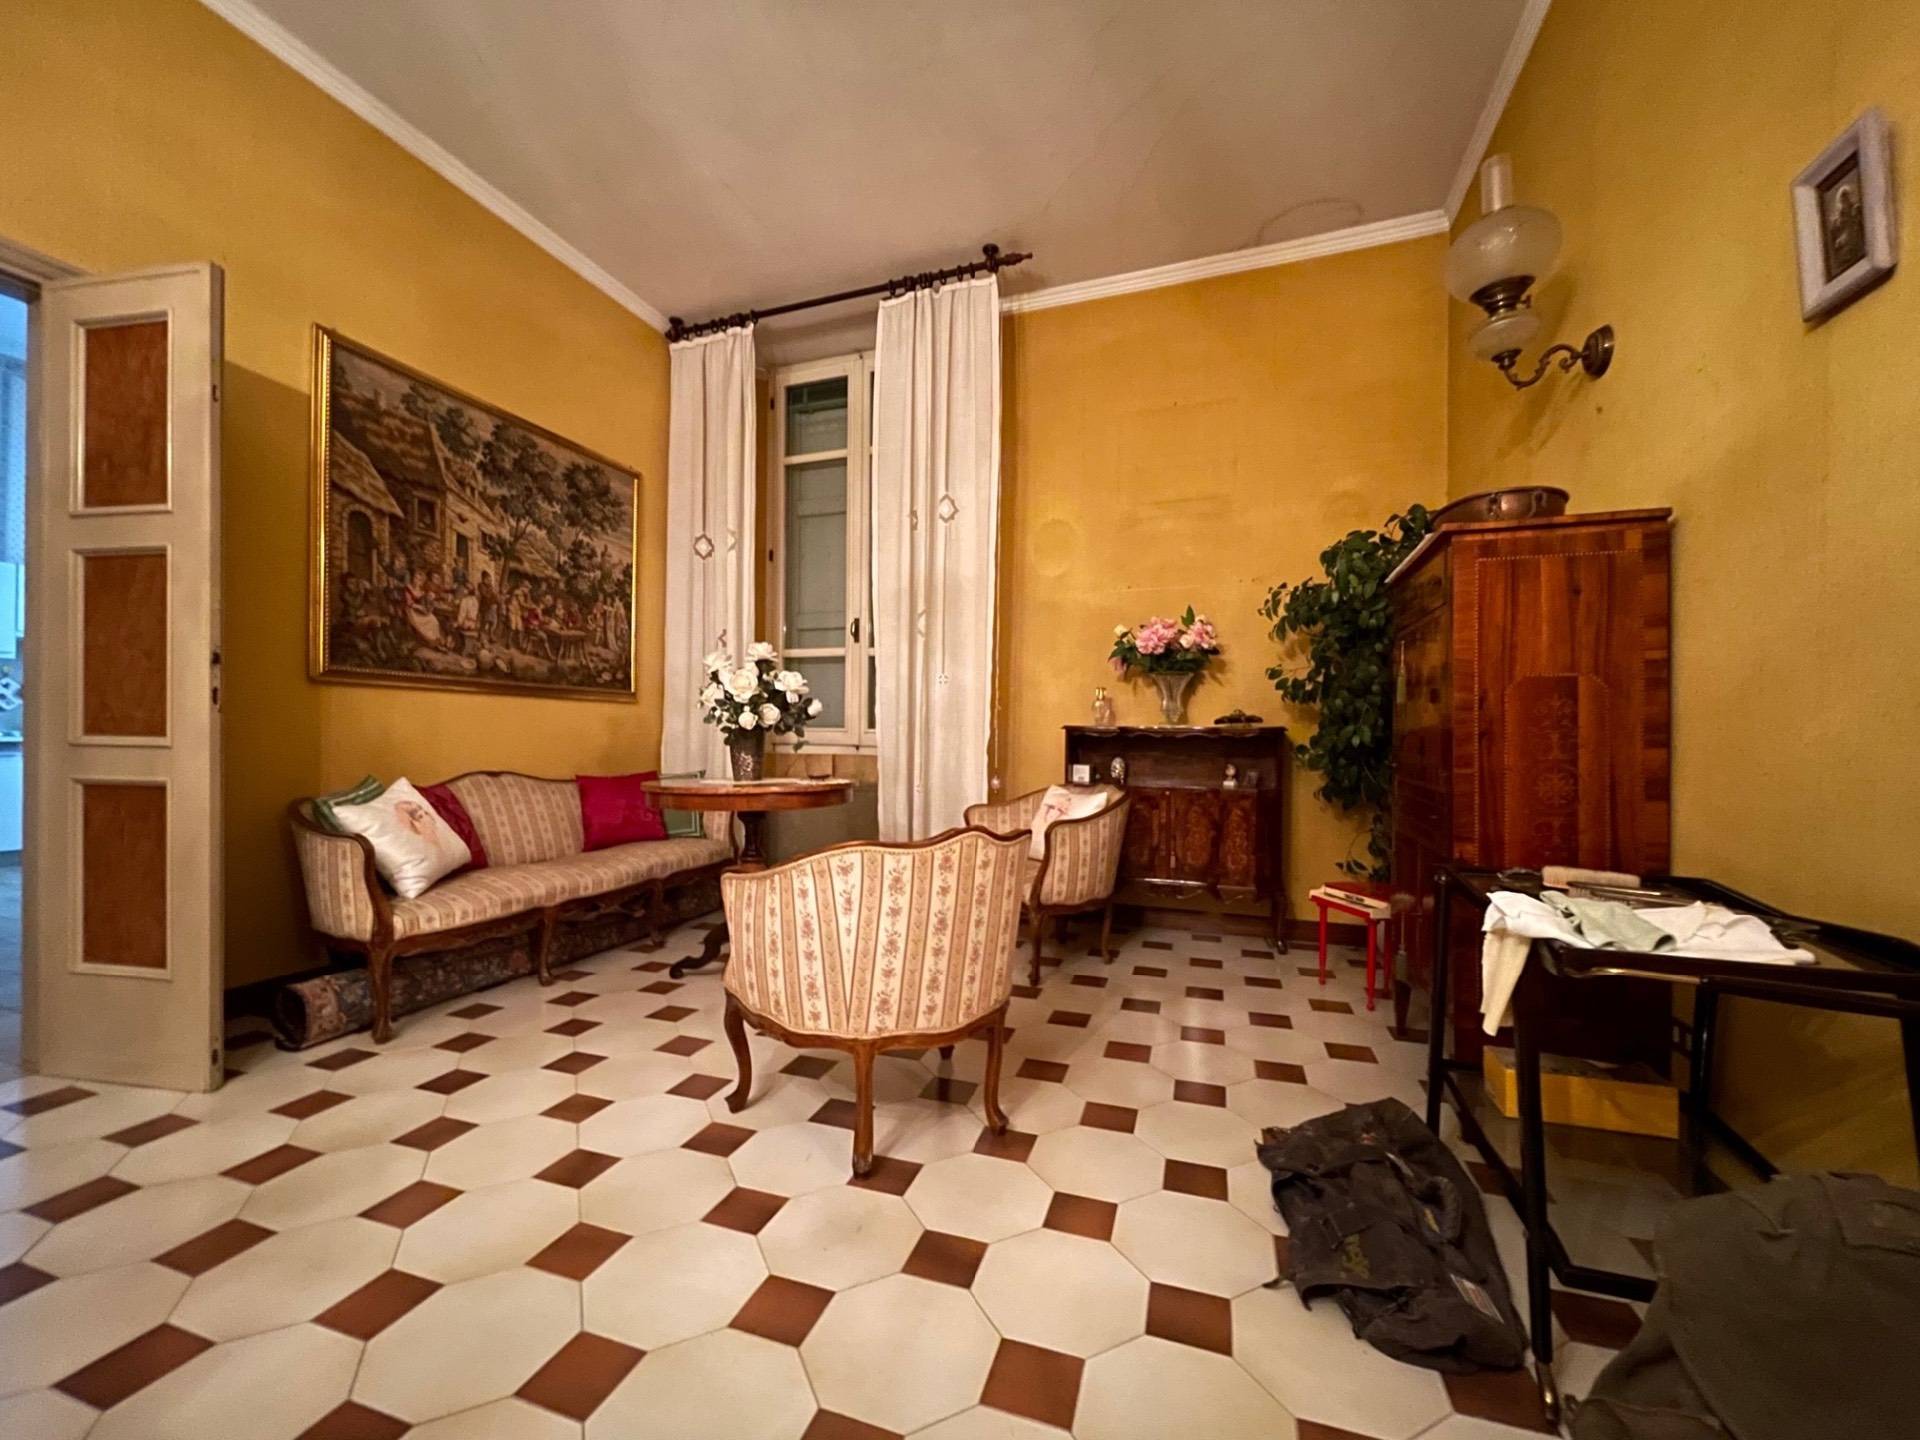 Appartamento da ristrutturare, Reggio Emilia centro storico